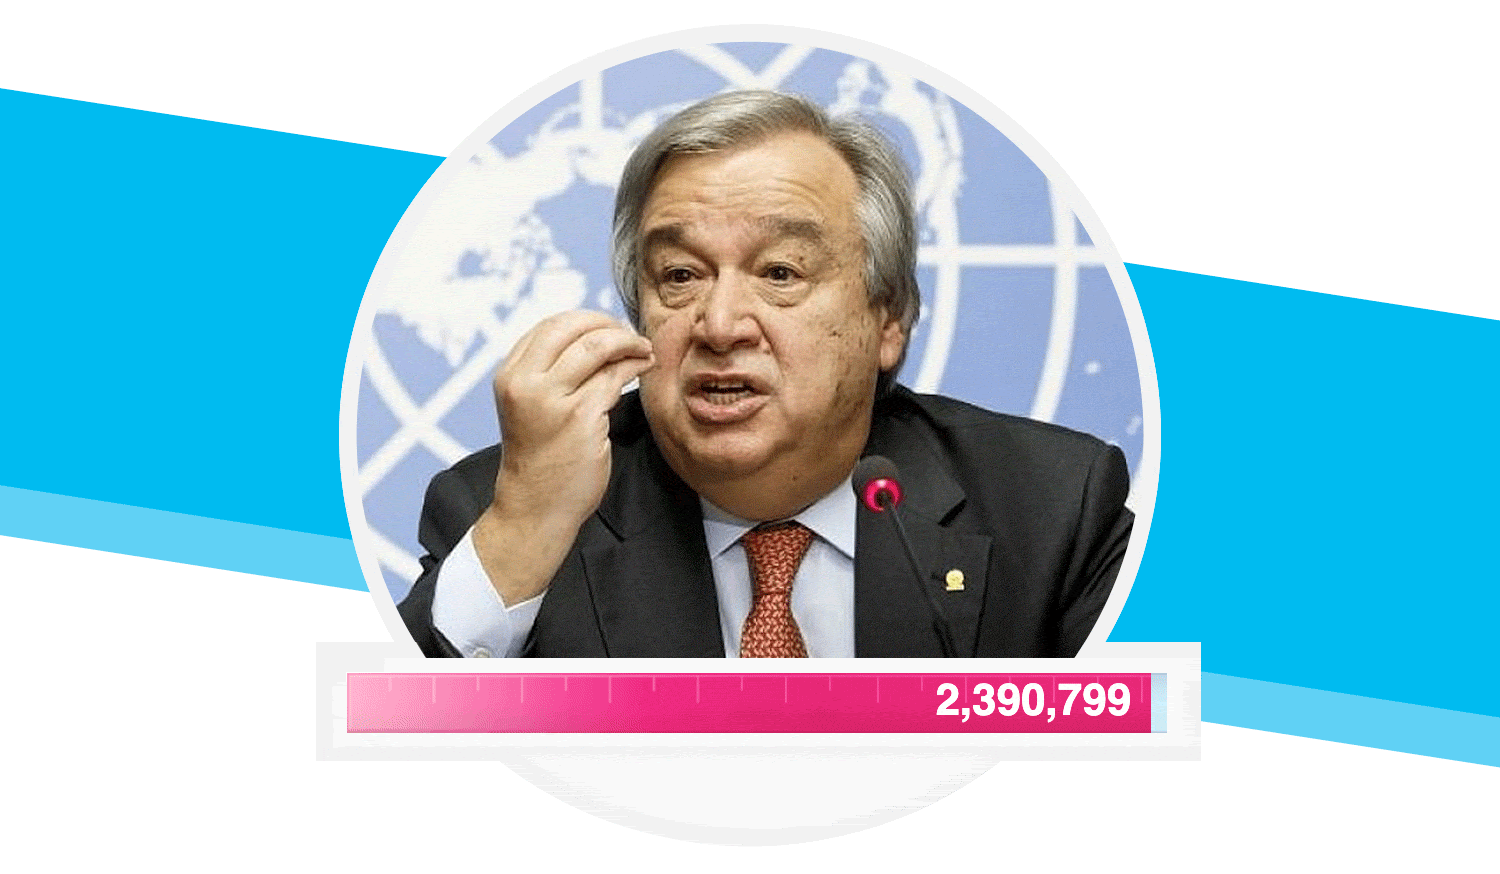 UN Chief, António Guterres